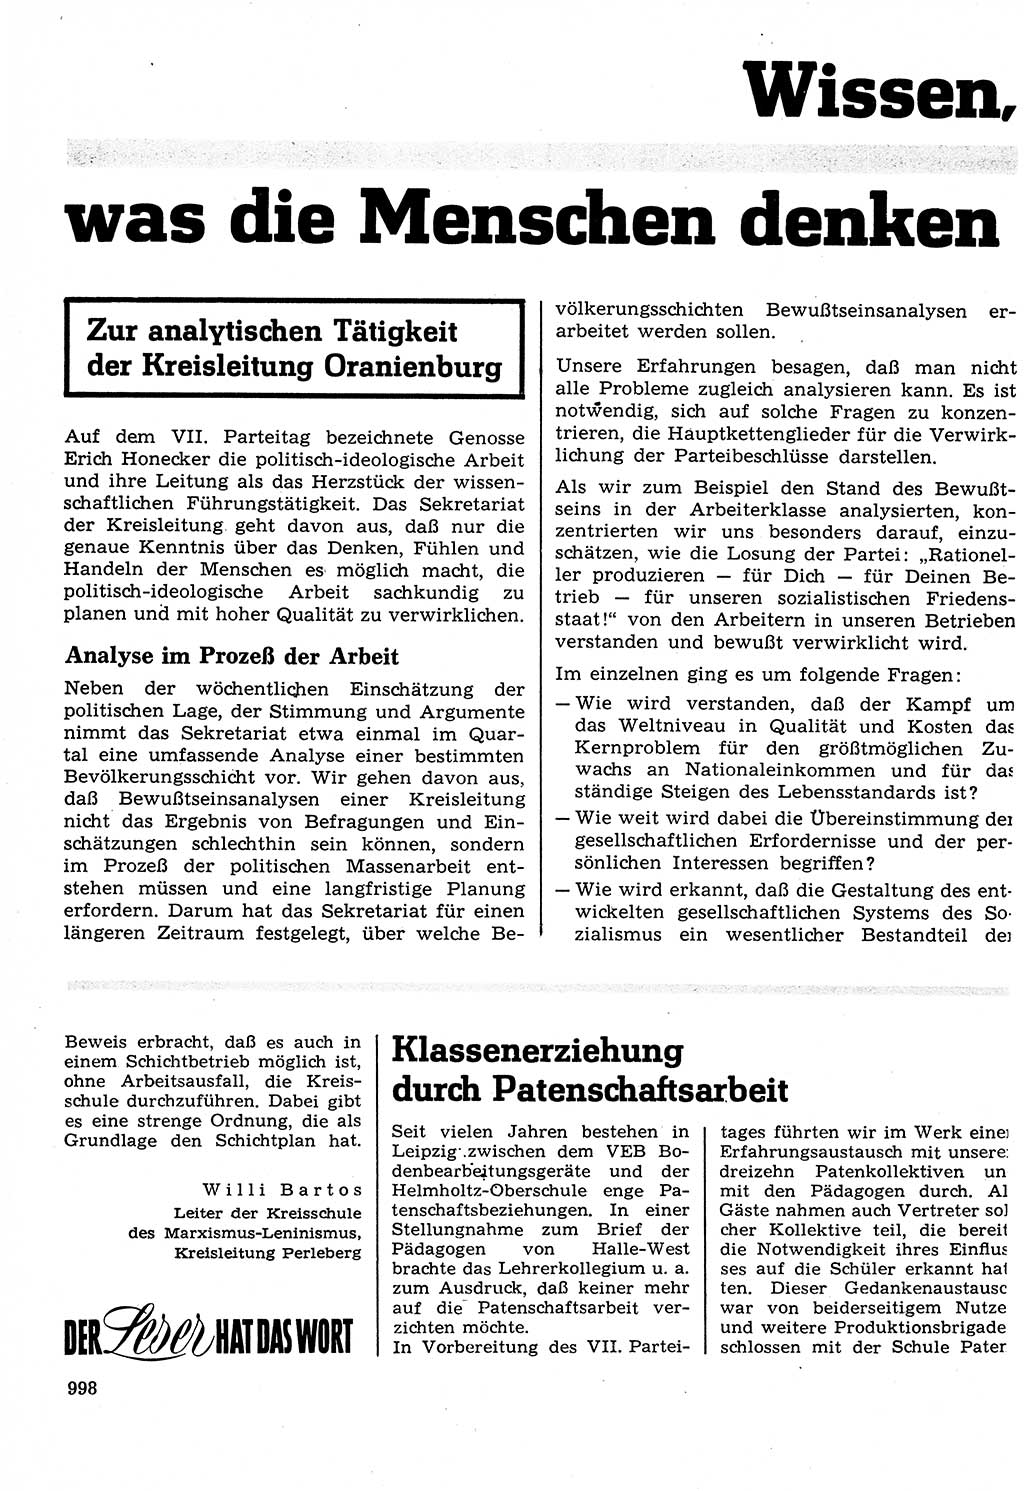 Neuer Weg (NW), Organ des Zentralkomitees (ZK) der SED (Sozialistische Einheitspartei Deutschlands) für Fragen des Parteilebens, 22. Jahrgang [Deutsche Demokratische Republik (DDR)] 1967, Seite 998 (NW ZK SED DDR 1967, S. 998)